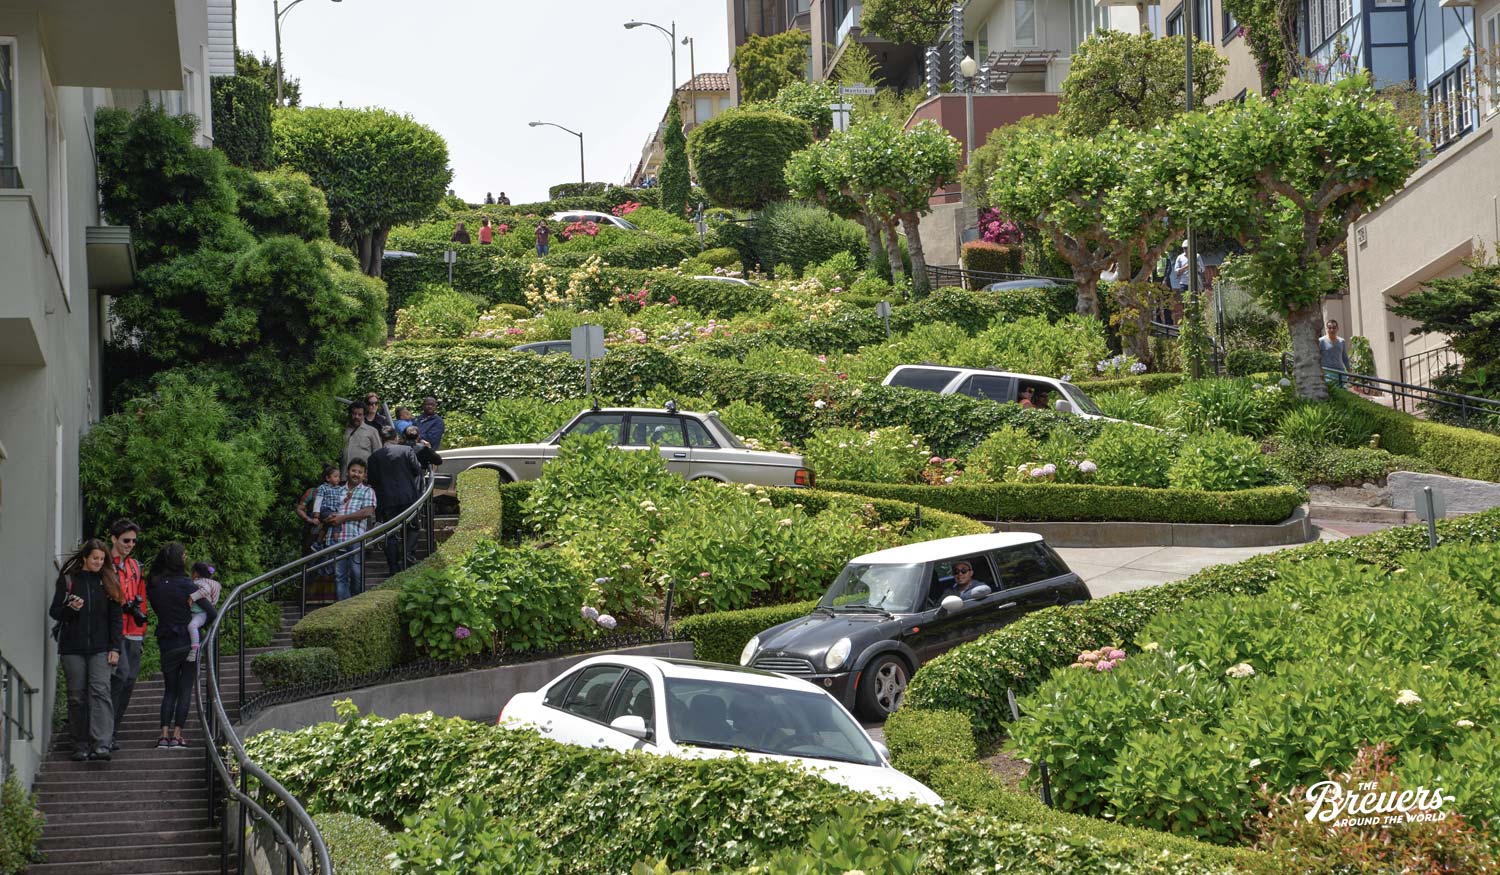 Lombard Street in San Francisco gilt als kurvenreichste Straße der Welt